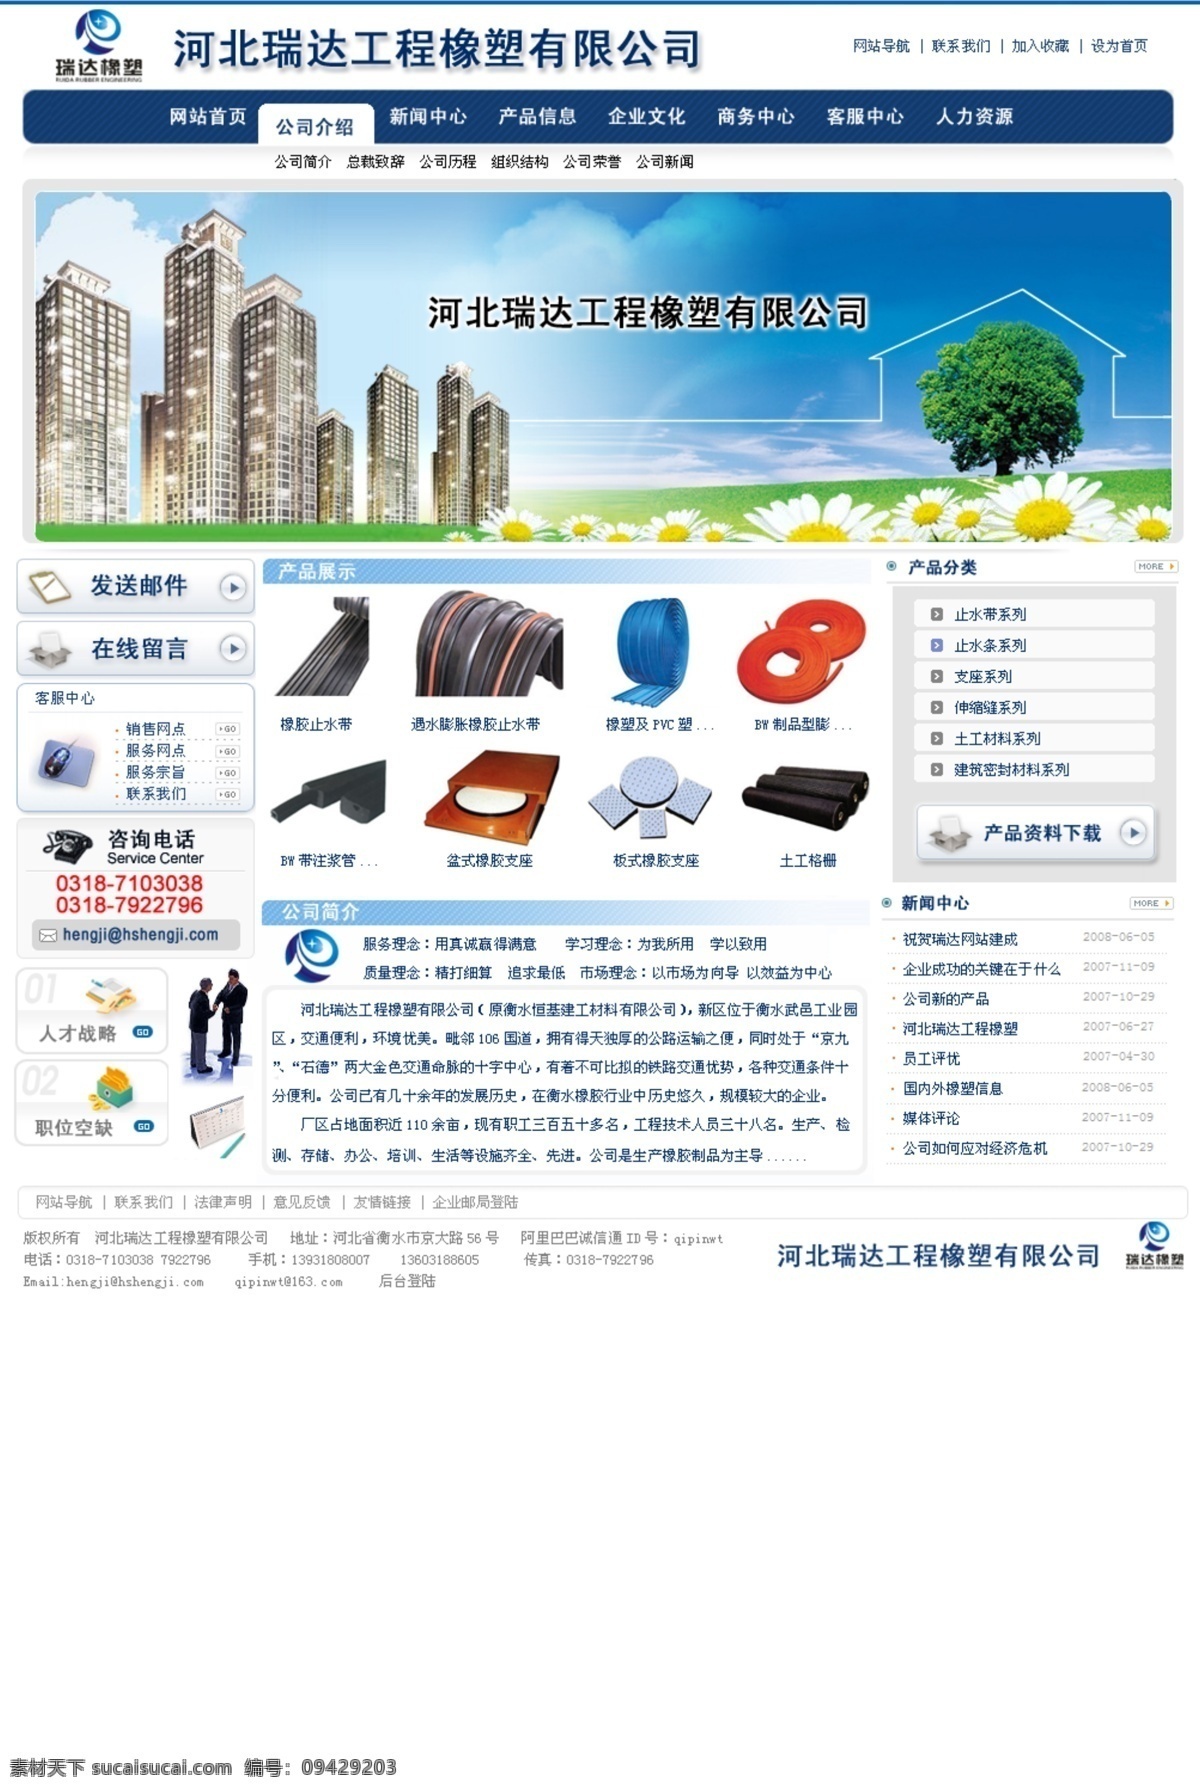 大气 企业 首页 网页模板 企业模板 源文件库 中文模版 大气企业模板 网页素材